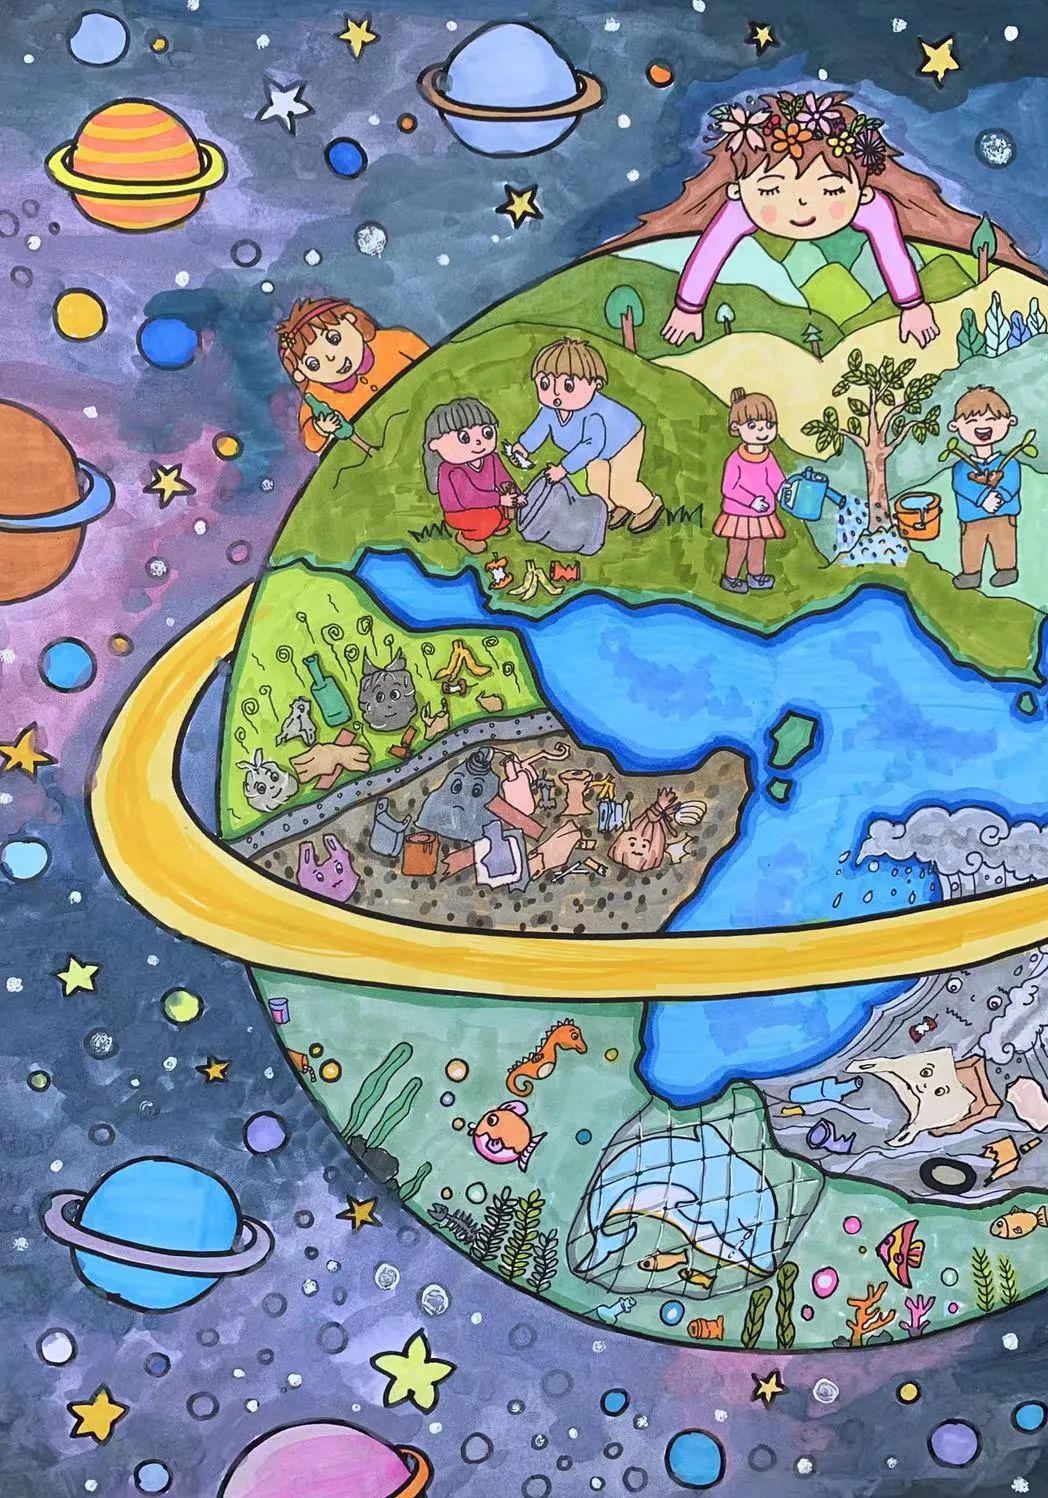 世界地球日儿童画公益大赛结果出炉